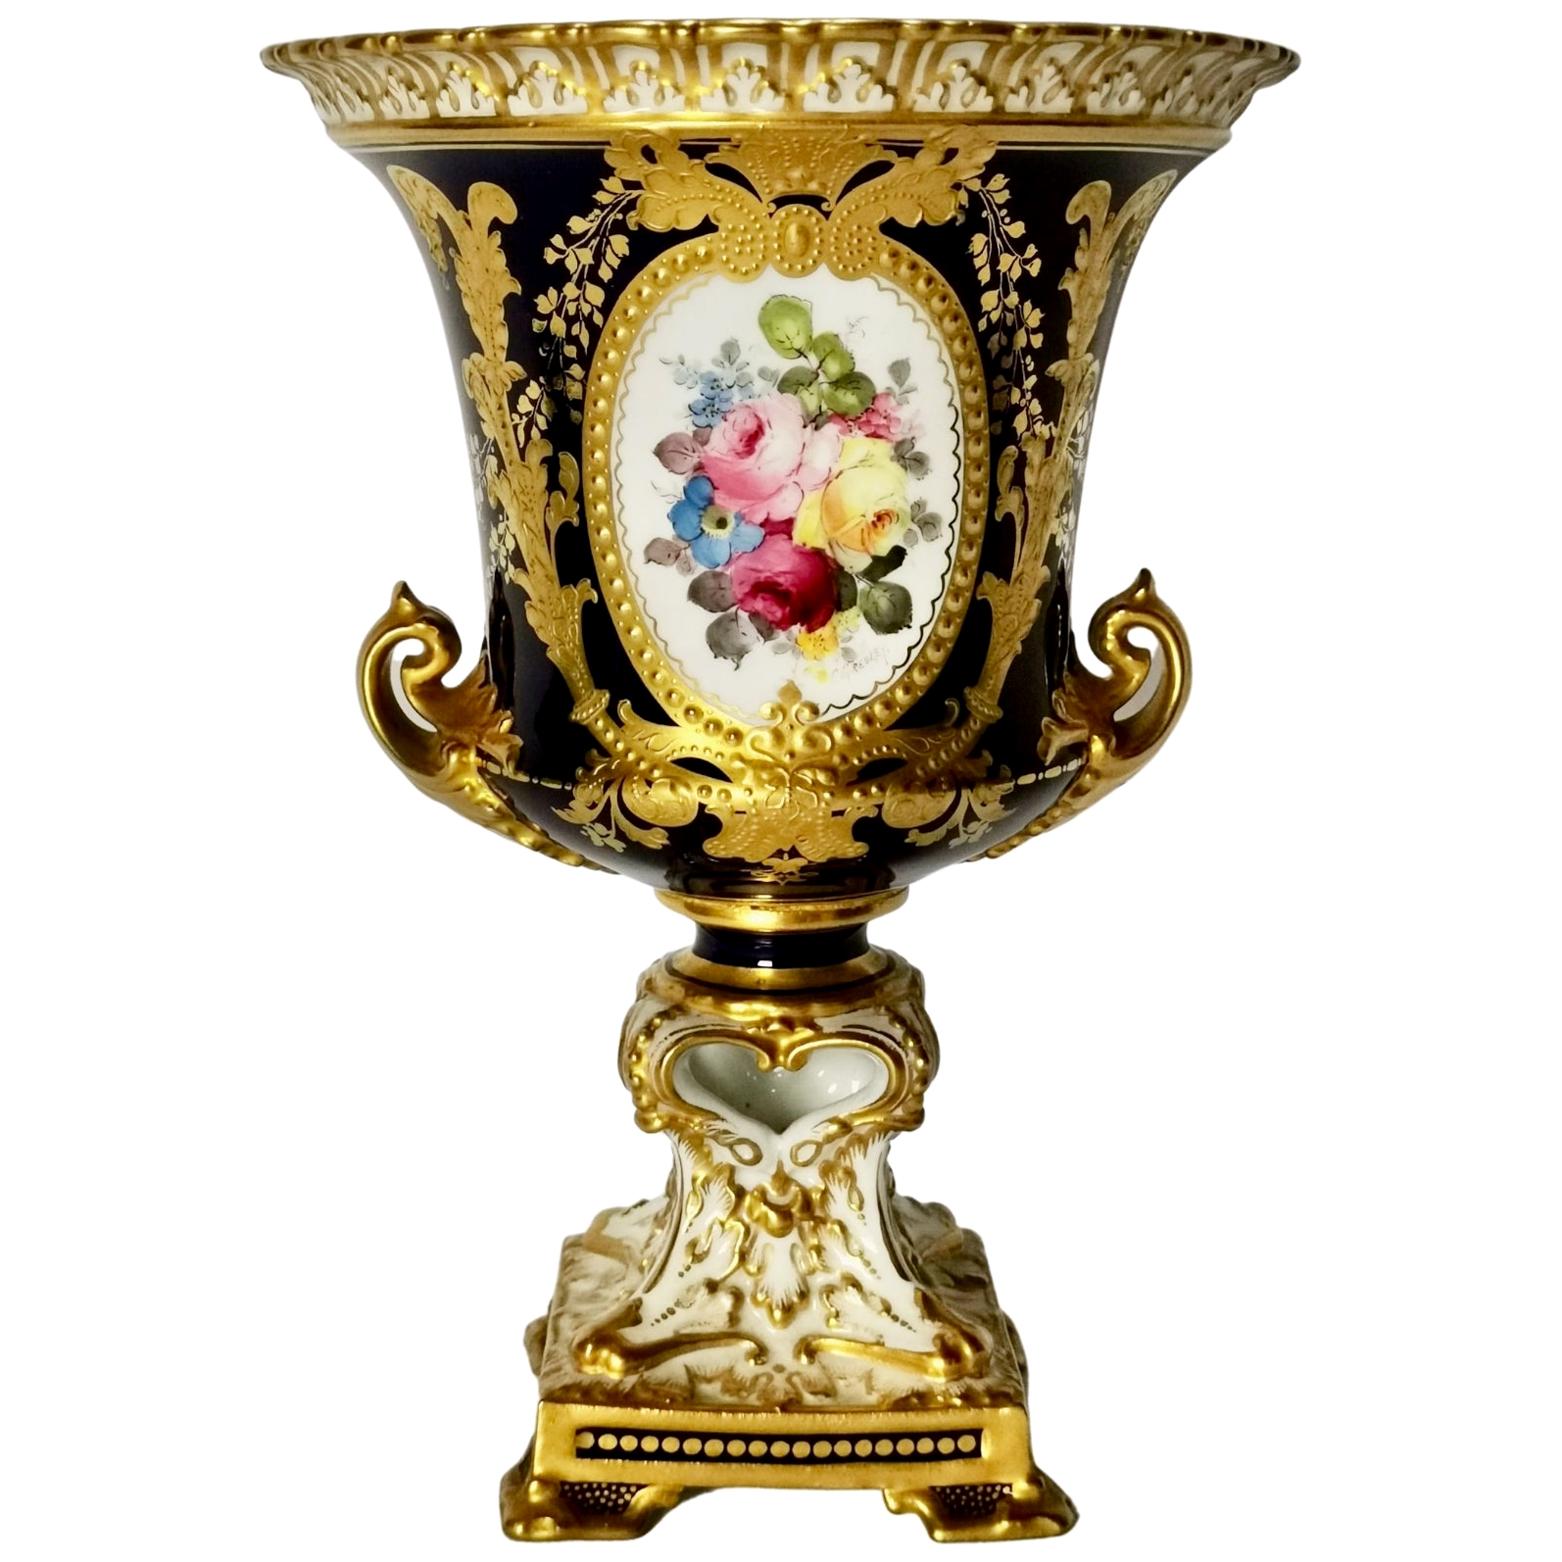 Royal Crown Derby Porcelain Campana Vase, Cobalt Blue, Flowers by C Gresley 1916